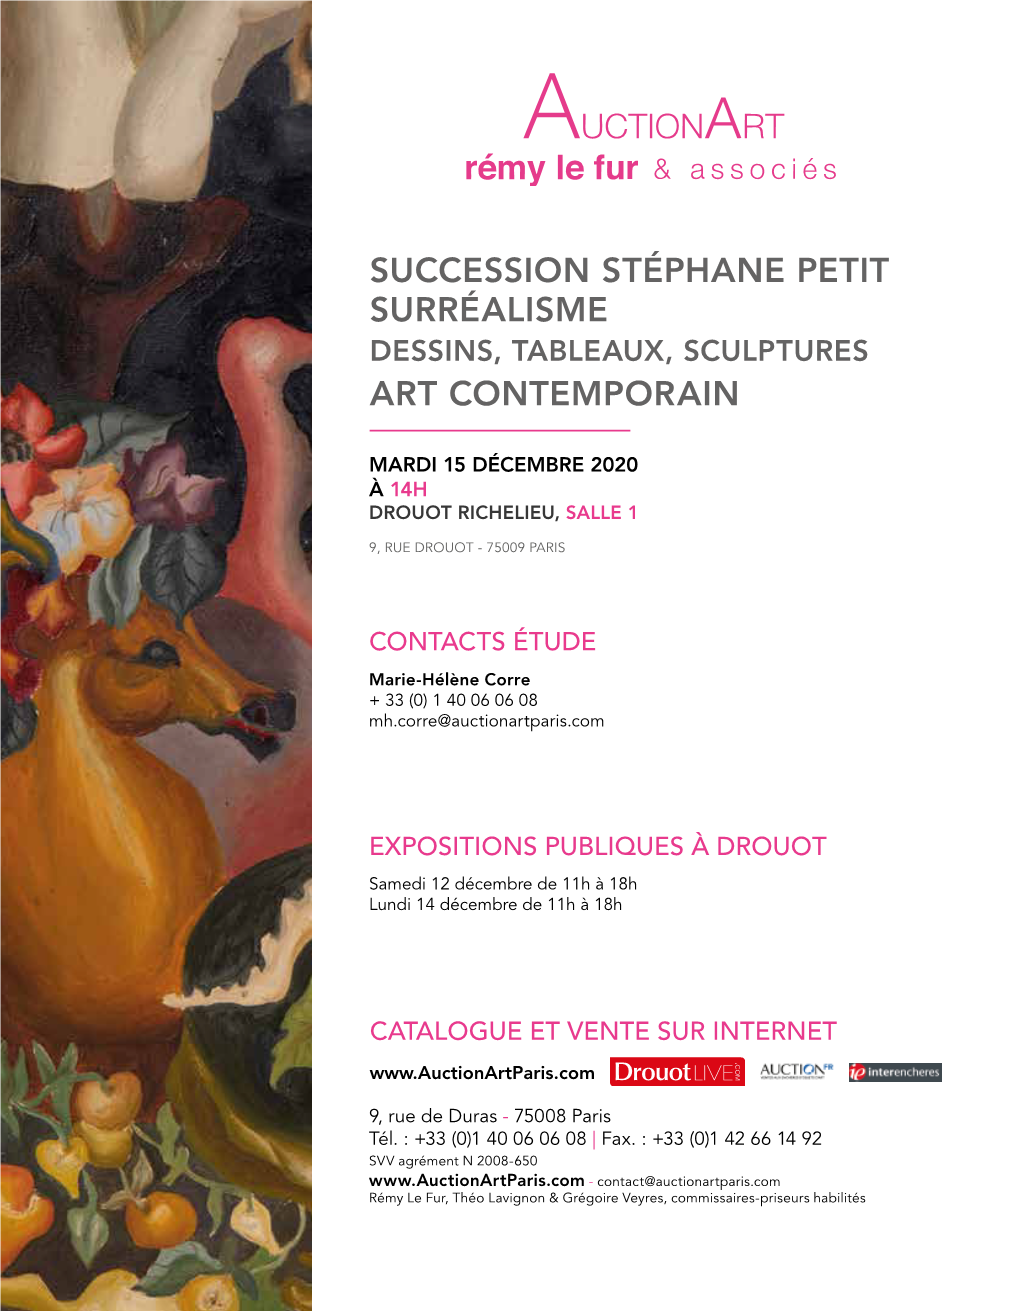 Succession Stéphane Petit Surréalisme Art Contemporain